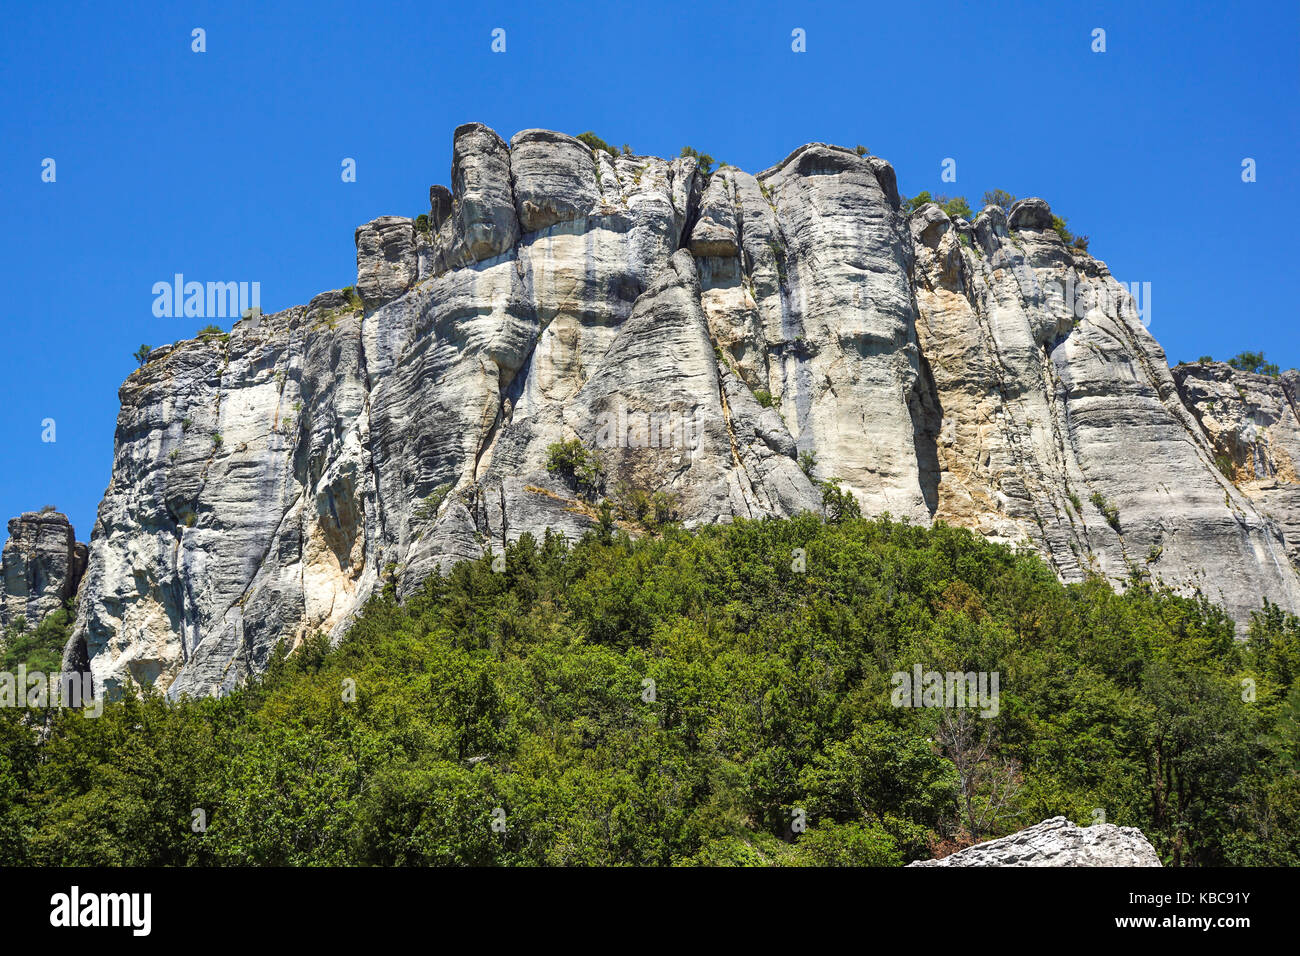 Montaña vertical . La escalada en roca de los escarpados acantilados de la montaña . Foto de stock